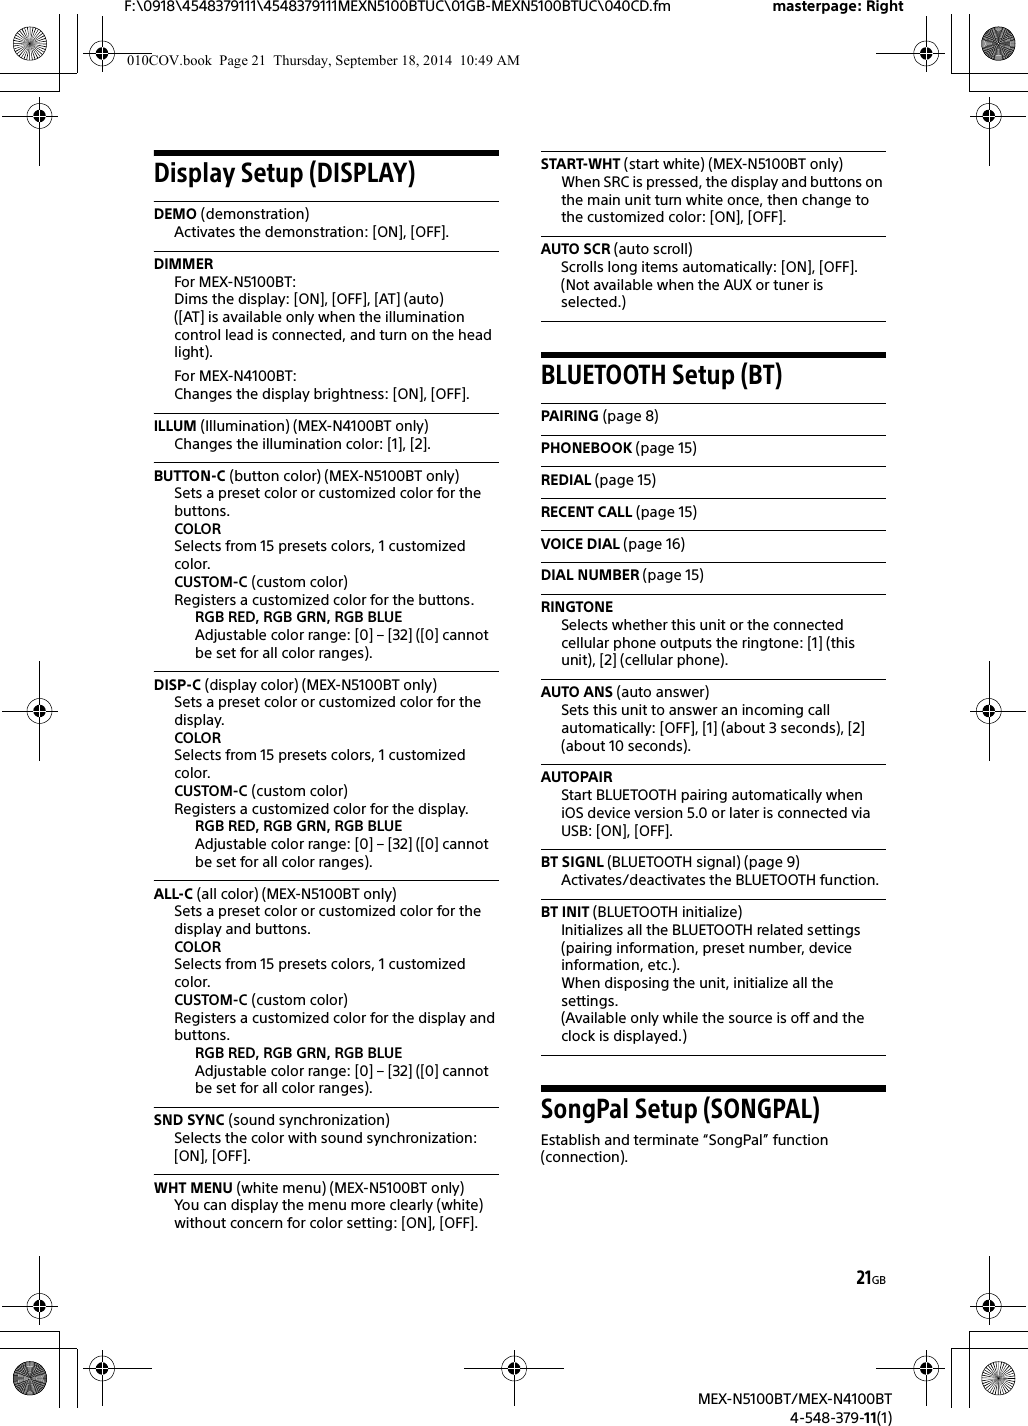 Sony mex n5100bt manual pdf